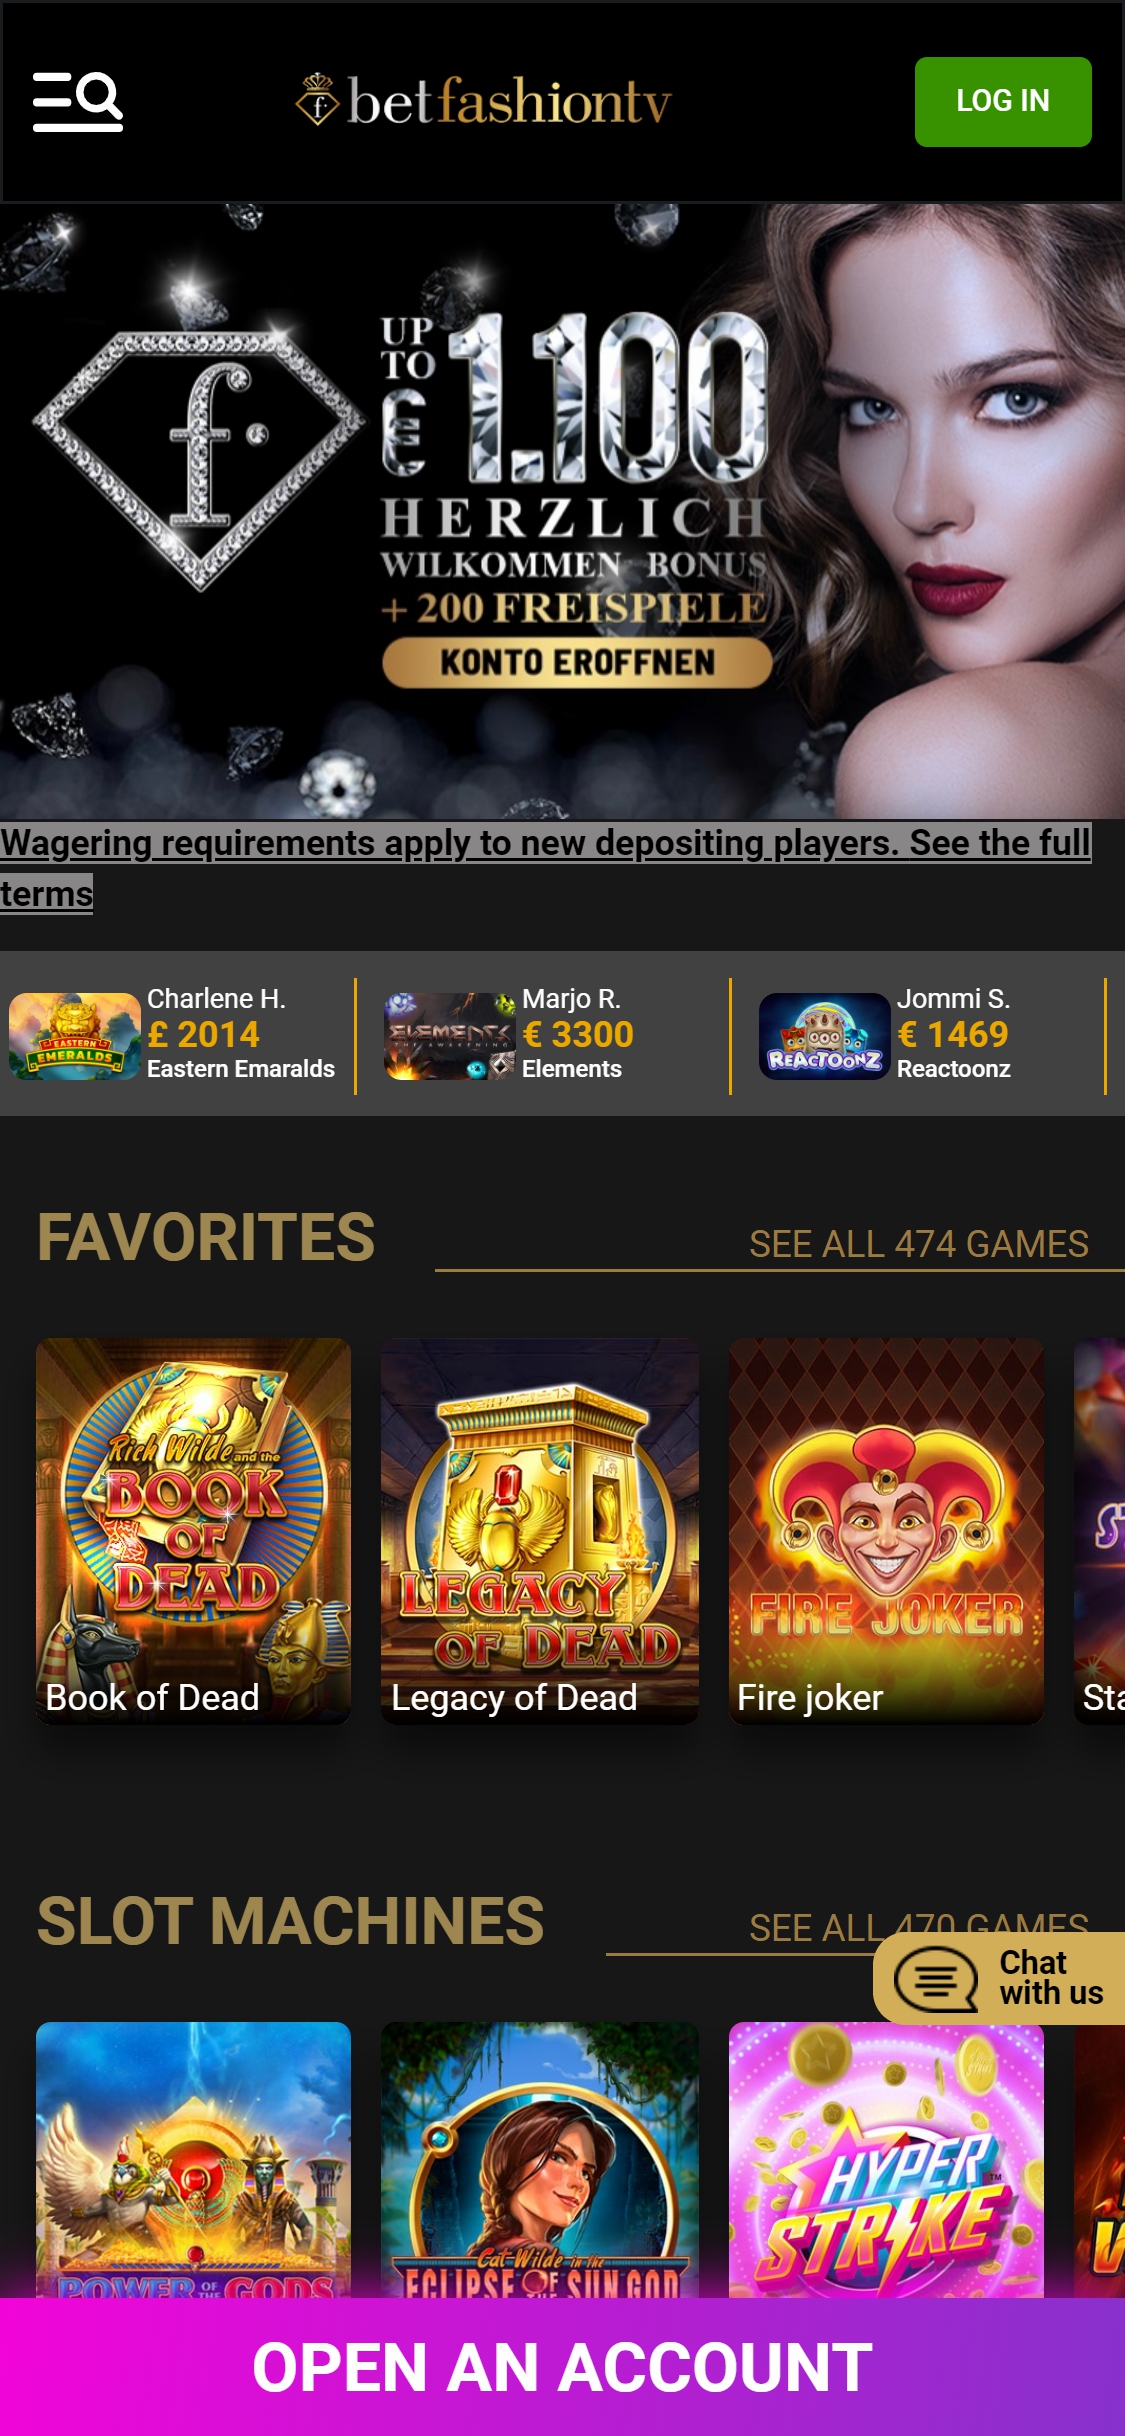 BetFashionTV Casino Mobile Review